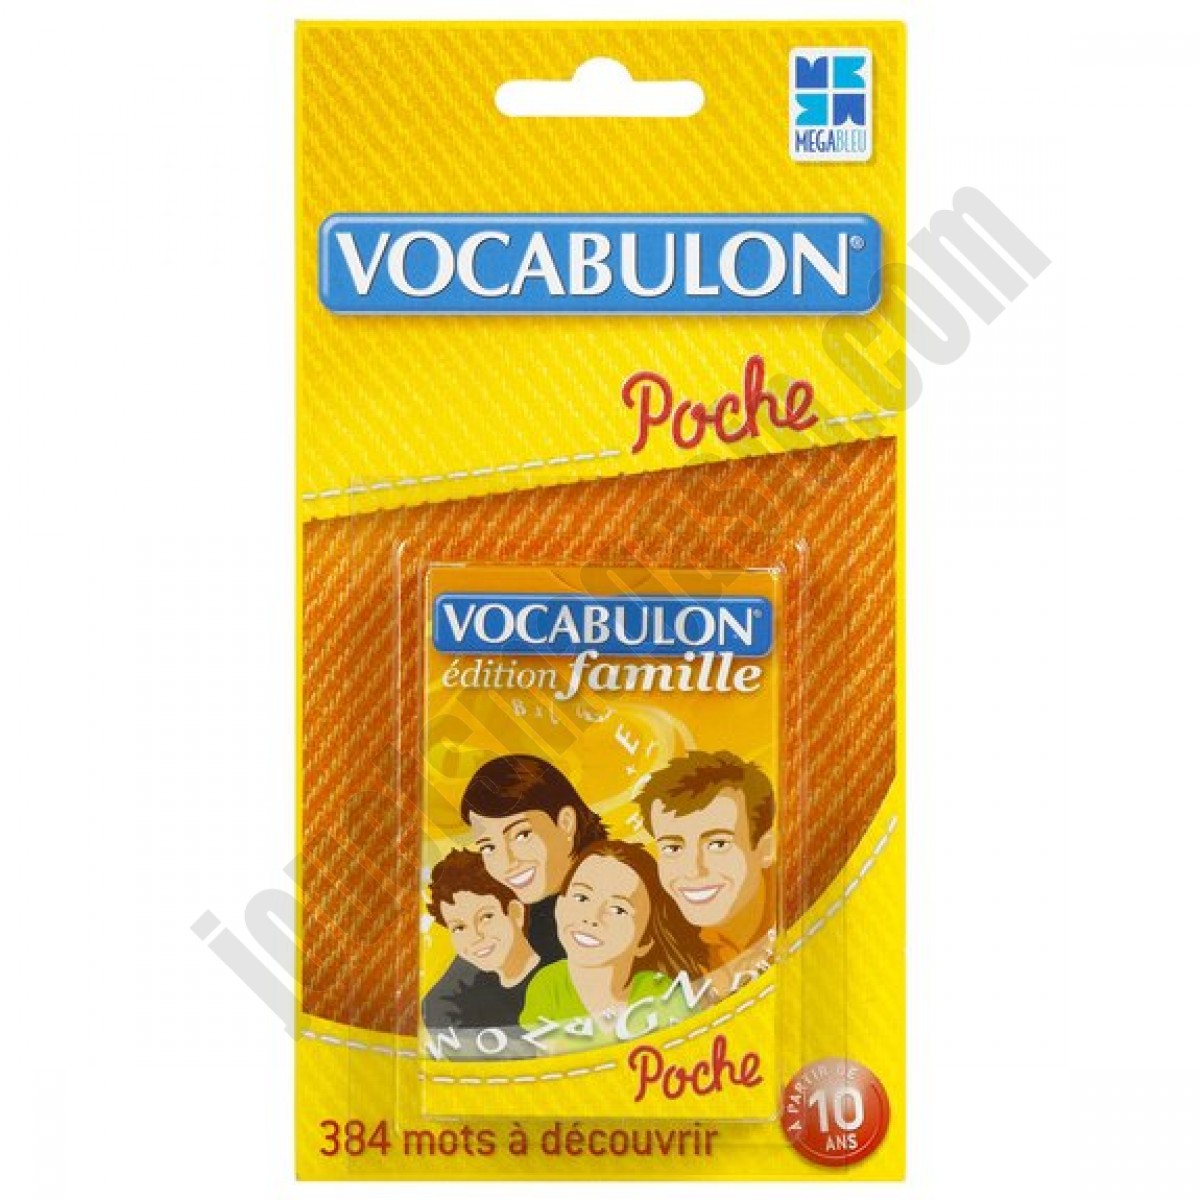 Pocket Vocabulon Famille ◆◆◆ Nouveau - Pocket Vocabulon Famille ◆◆◆ Nouveau